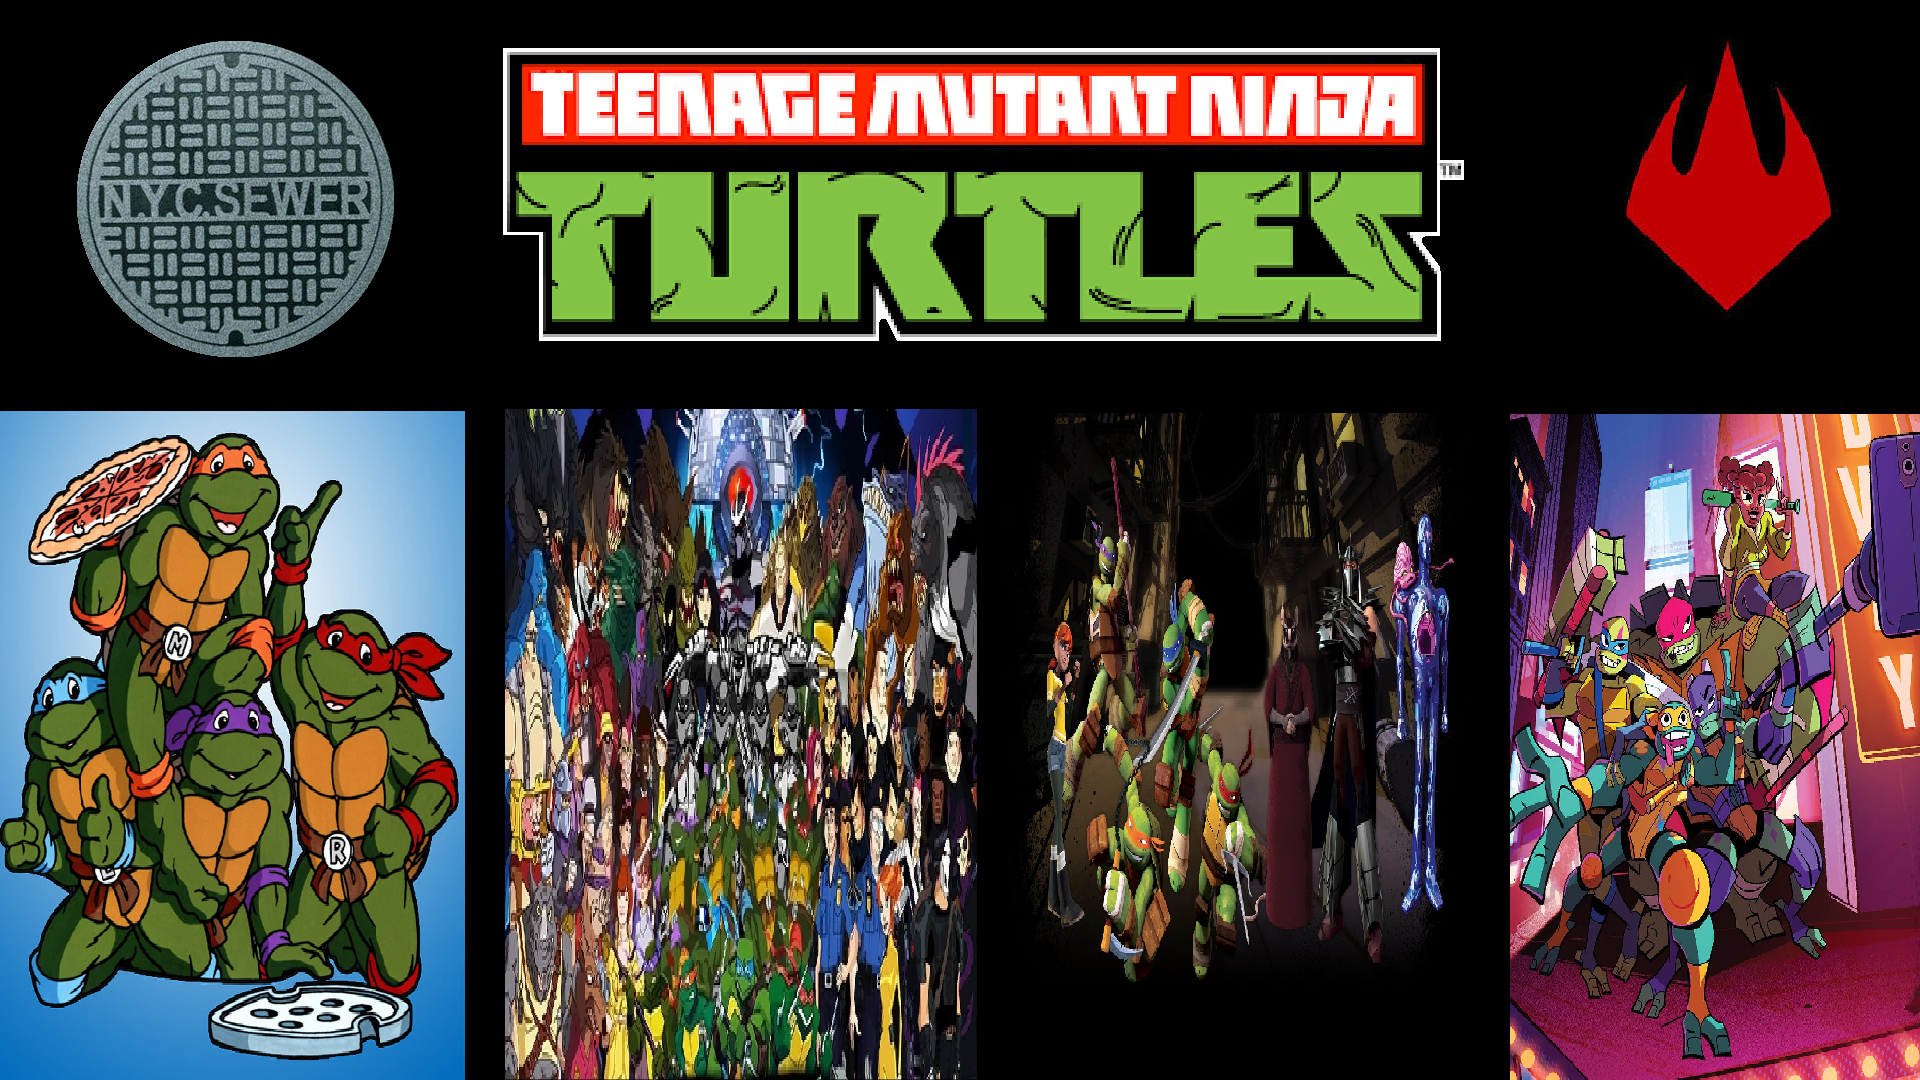 Teenage Mutant Ninja Turtles (franchise) | Paramount Global Wiki